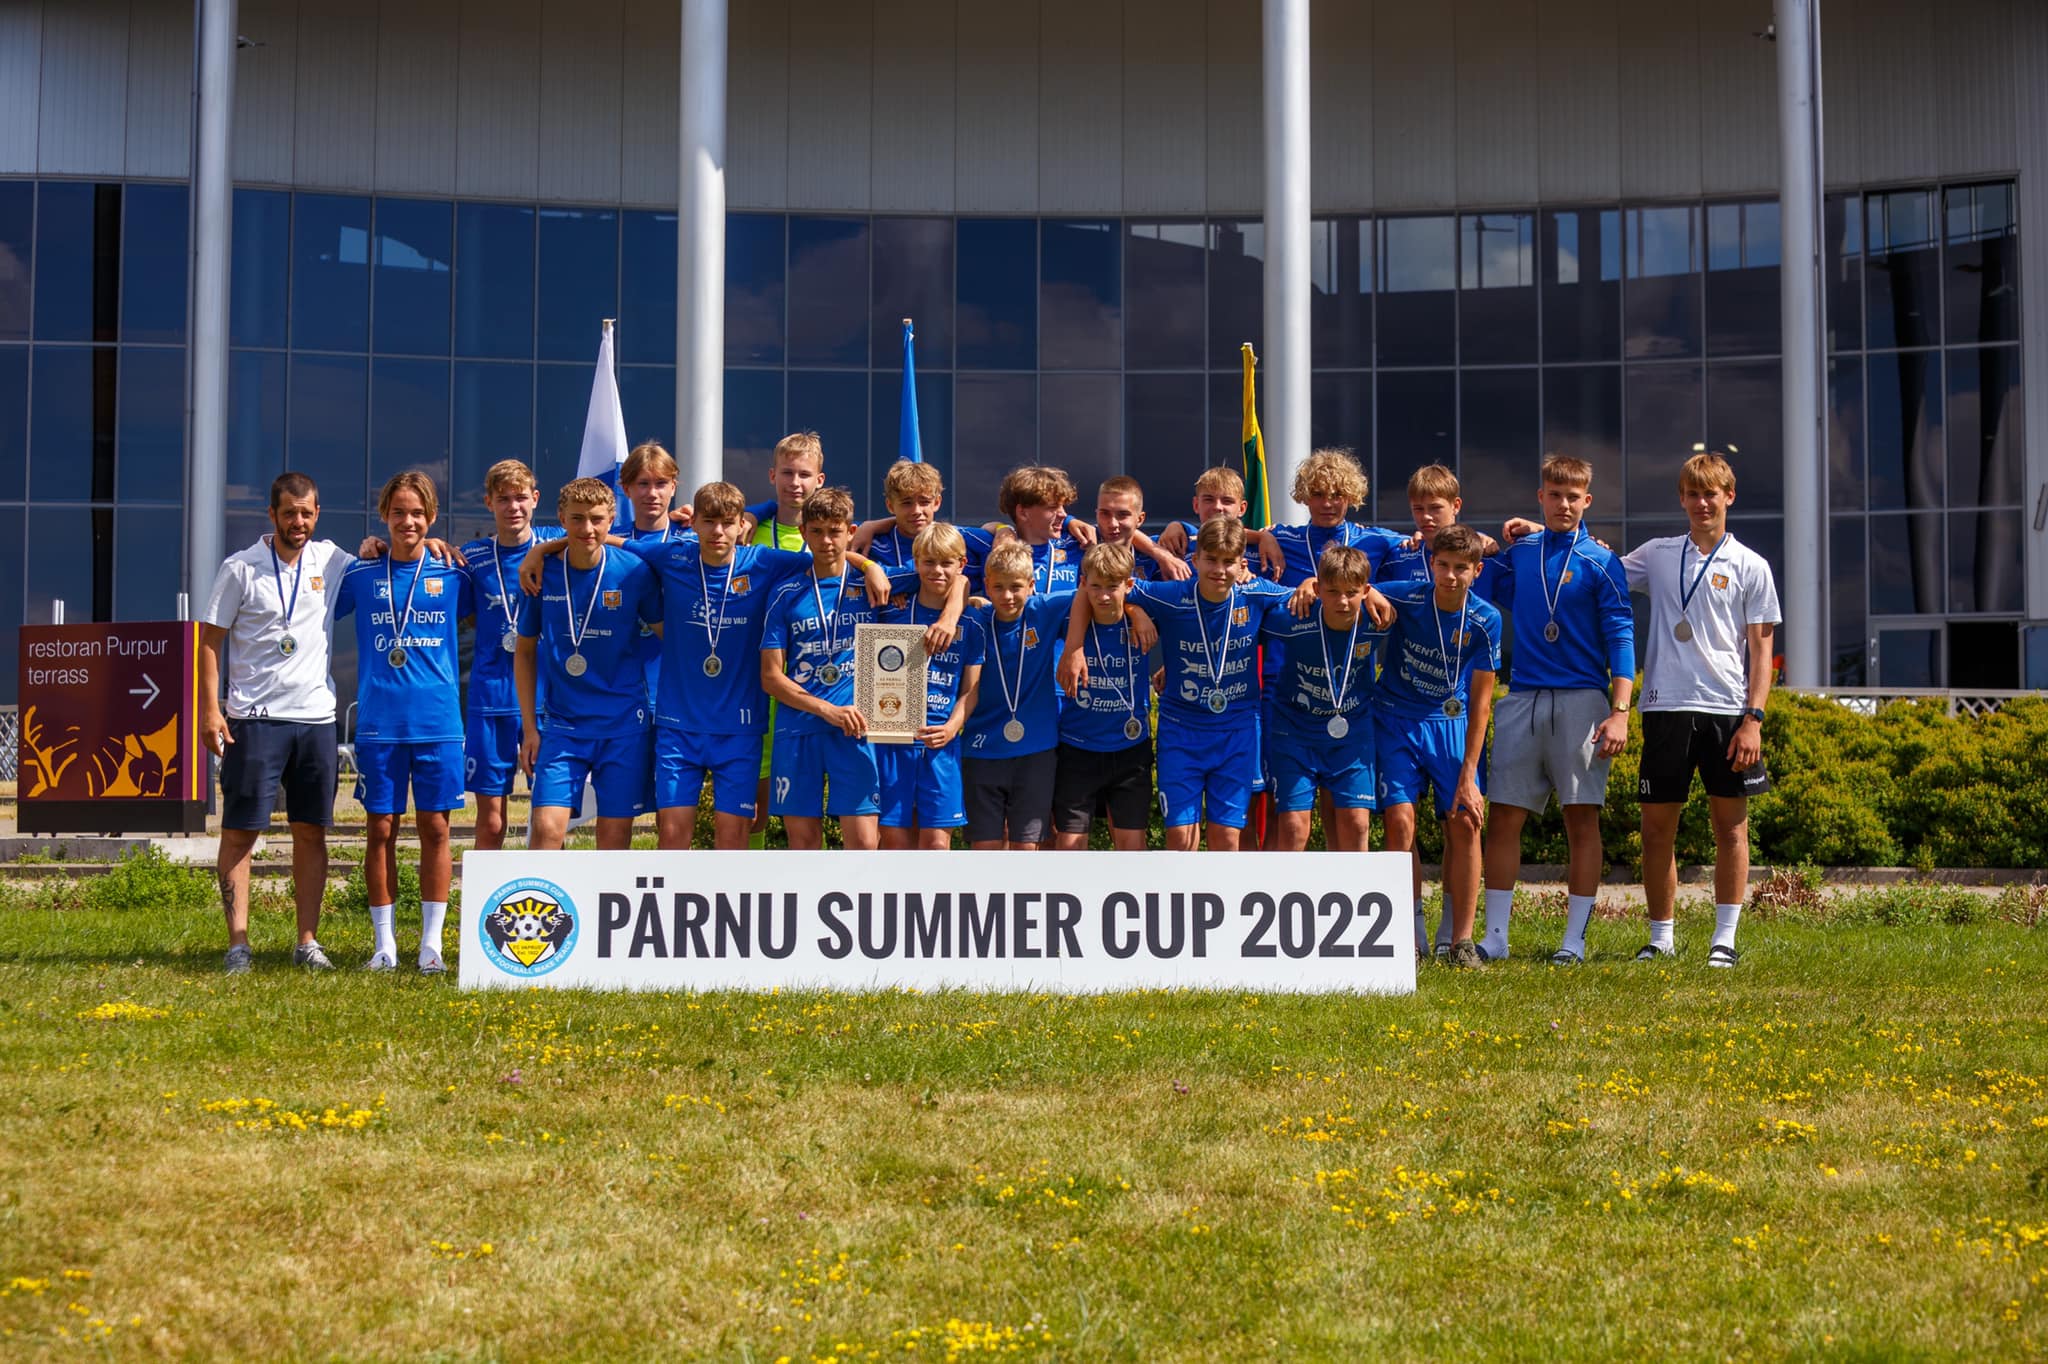 Pärnu Summer Cup 2022